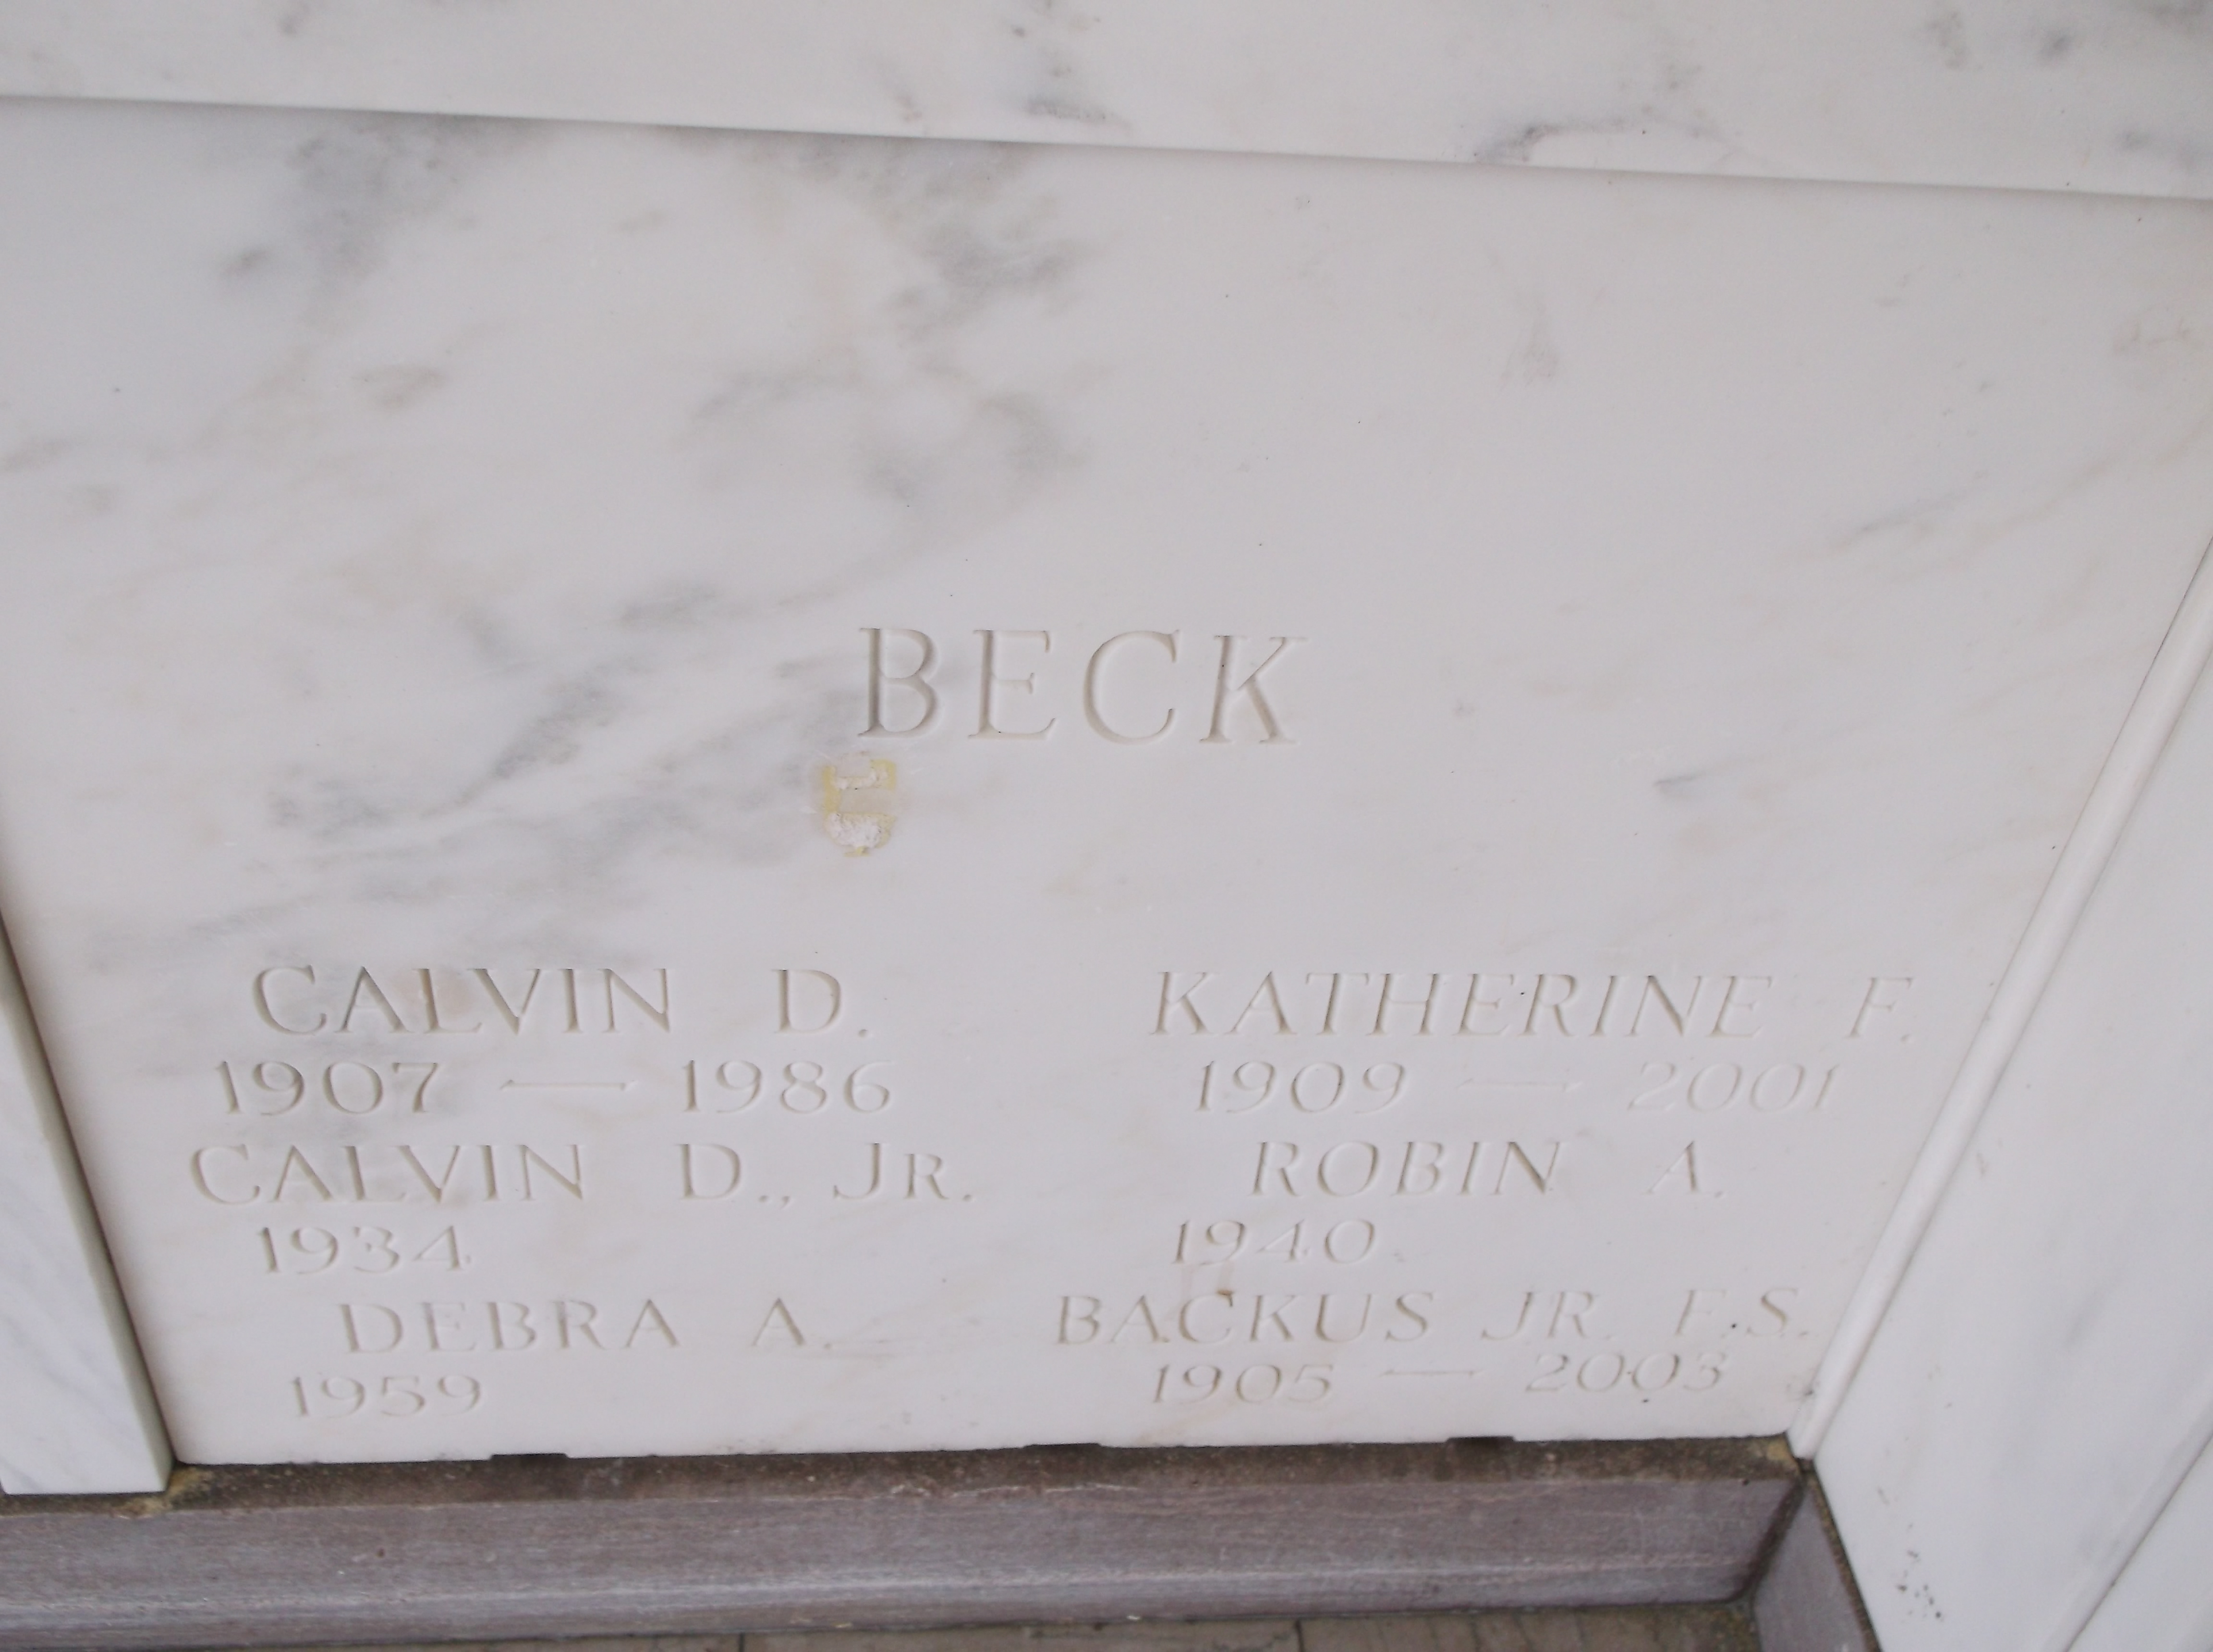 Backus Beck, Jr